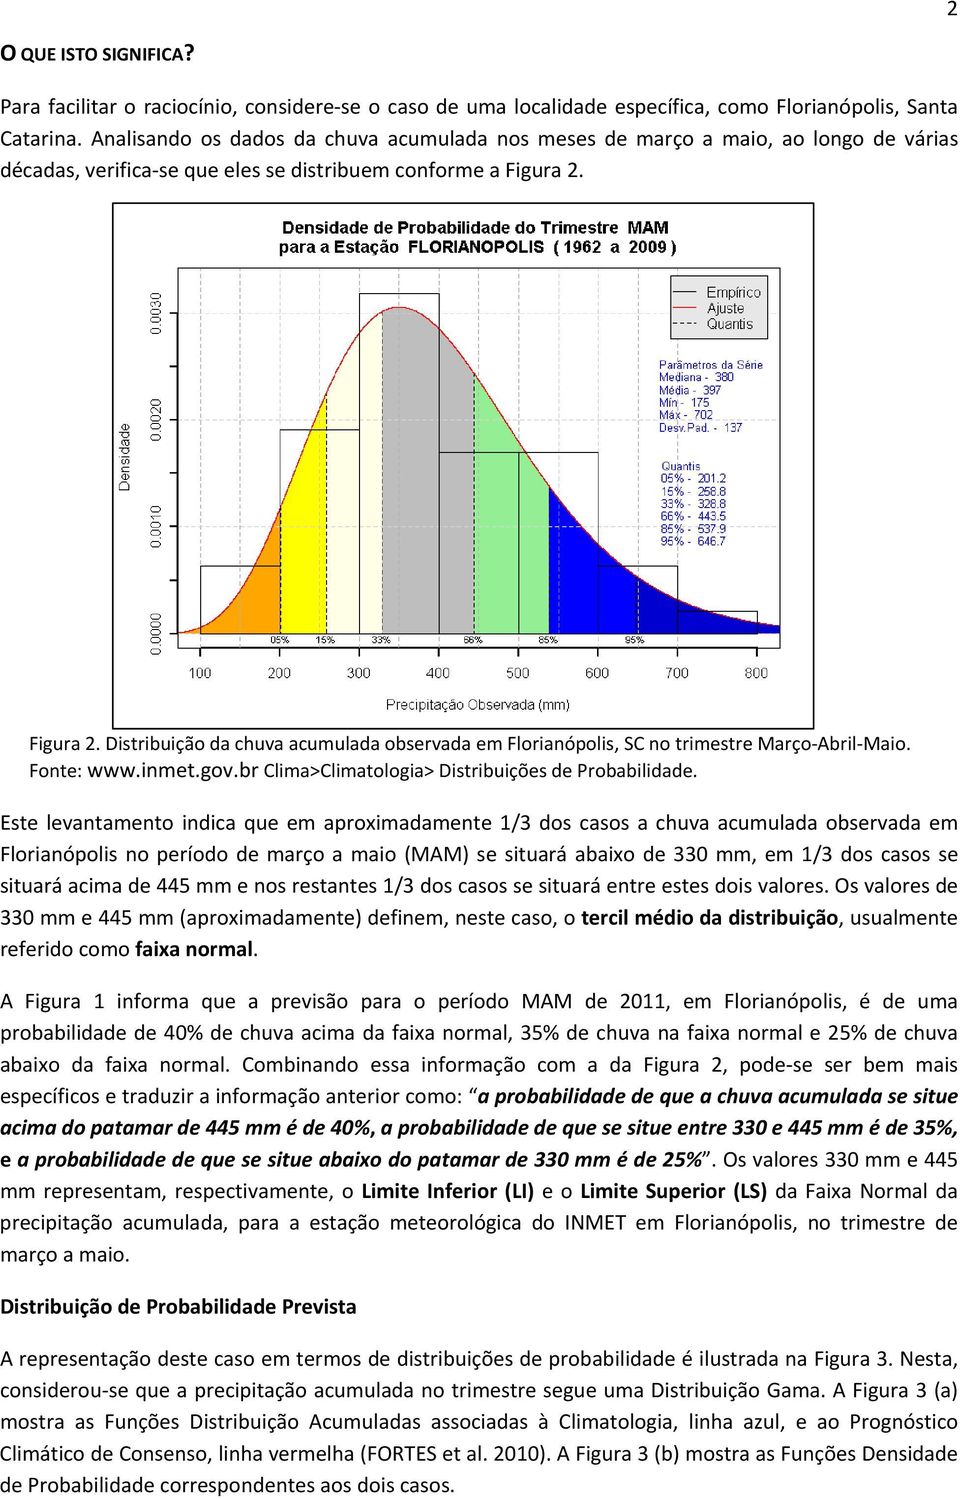 Figura 2. Distribuição da chuva acumulada observada em Florianópolis, SC no trimestre Março Abril Maio. Fonte: www.inmet.gov.br Clima>Climatologia> Distribuições de Probabilidade.